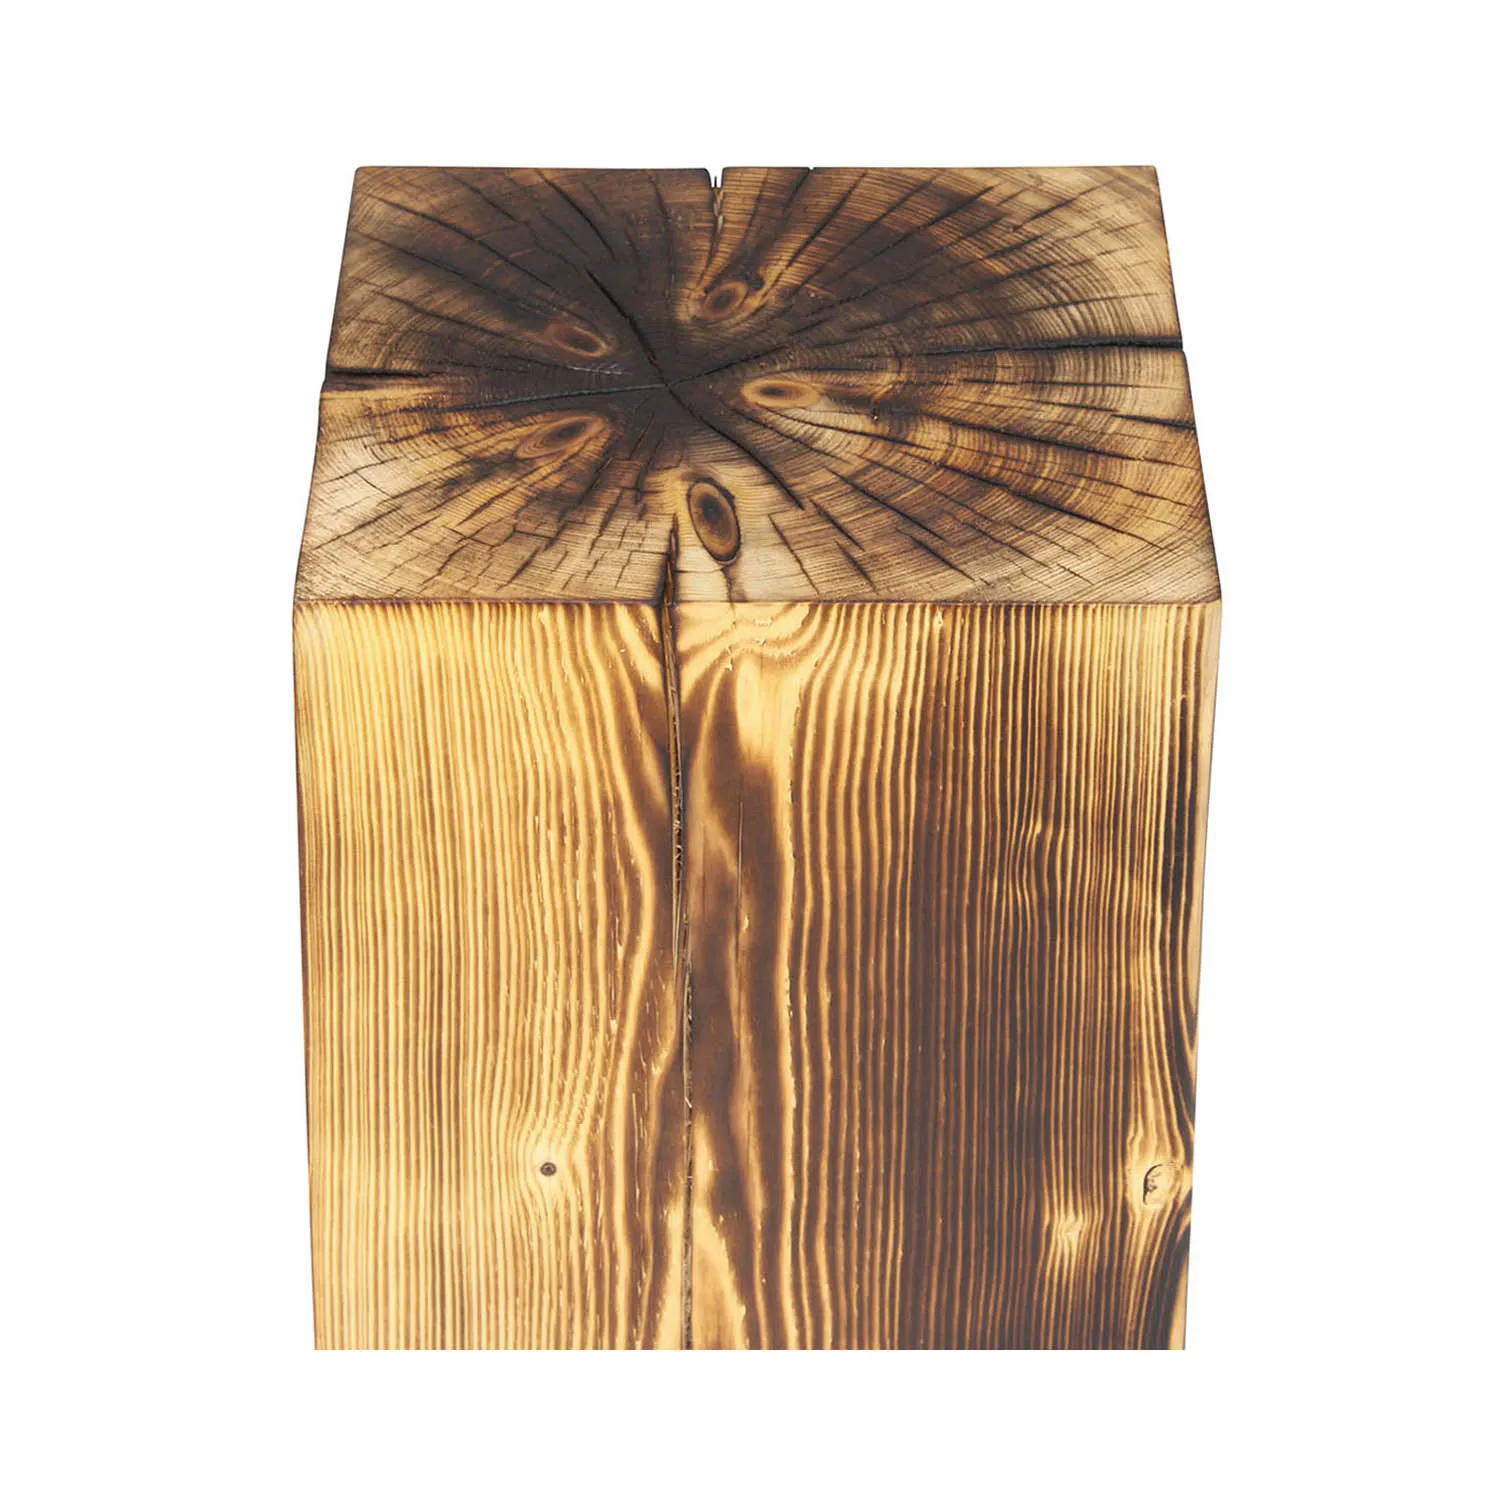 Holzblock aus Fichte Massivholz in leicht geflammter Optik, darauf stehen zwei Weingläser